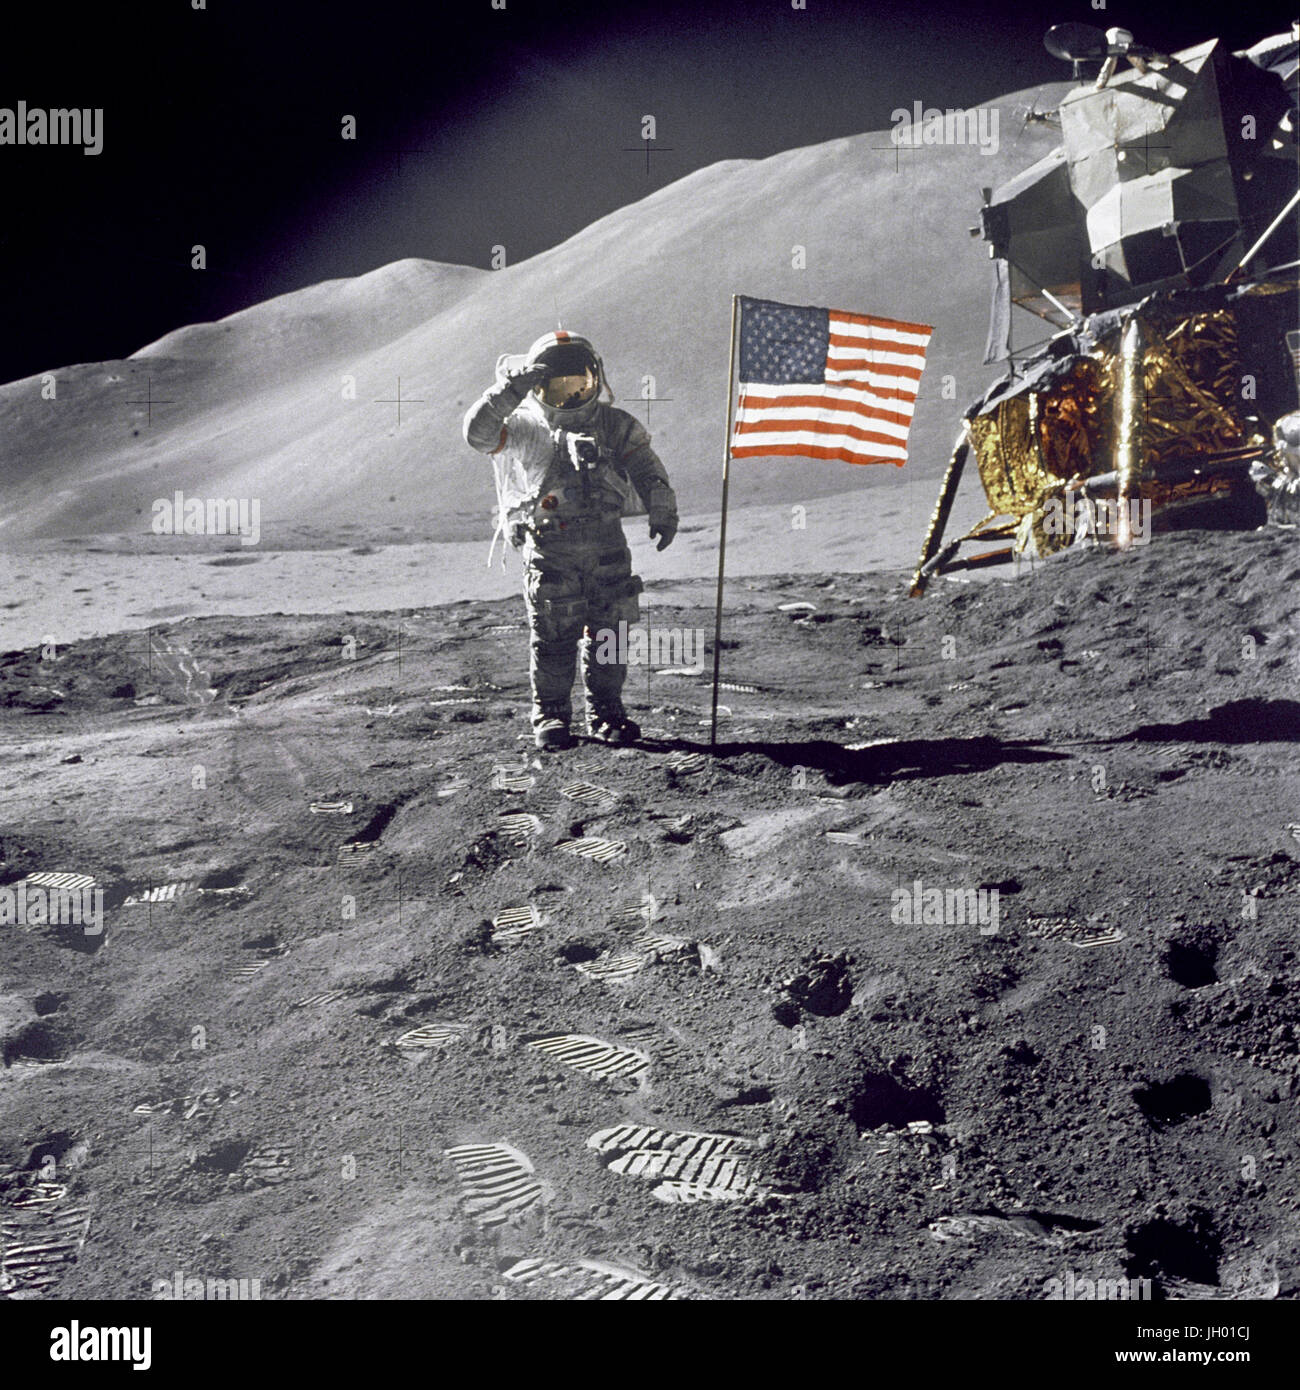 Astronaute David R. Scott, commandant, donne un salut militaire tout en se tenant à côté du drapeau des États-Unis déployée au cours de la surface lunaire Apollo 15 activité extravéhiculaire (EVA) à l'Hadley-Apennine site d'atterrissage. Le drapeau a été déployé à la fin de l'EVA-2. Le Module lunaire 'Falcon' est partiellement visible sur la droite. Hadley Delta dans l'arrière-plan s'élève à environ 4 000 mètres (environ 13 124 pieds) au-dessus de la plaine. La base de la montagne est d'environ 5 kilomètres (environ 3 milles) de l'établissement. Photographe : NASA James B. Irwin Banque D'Images